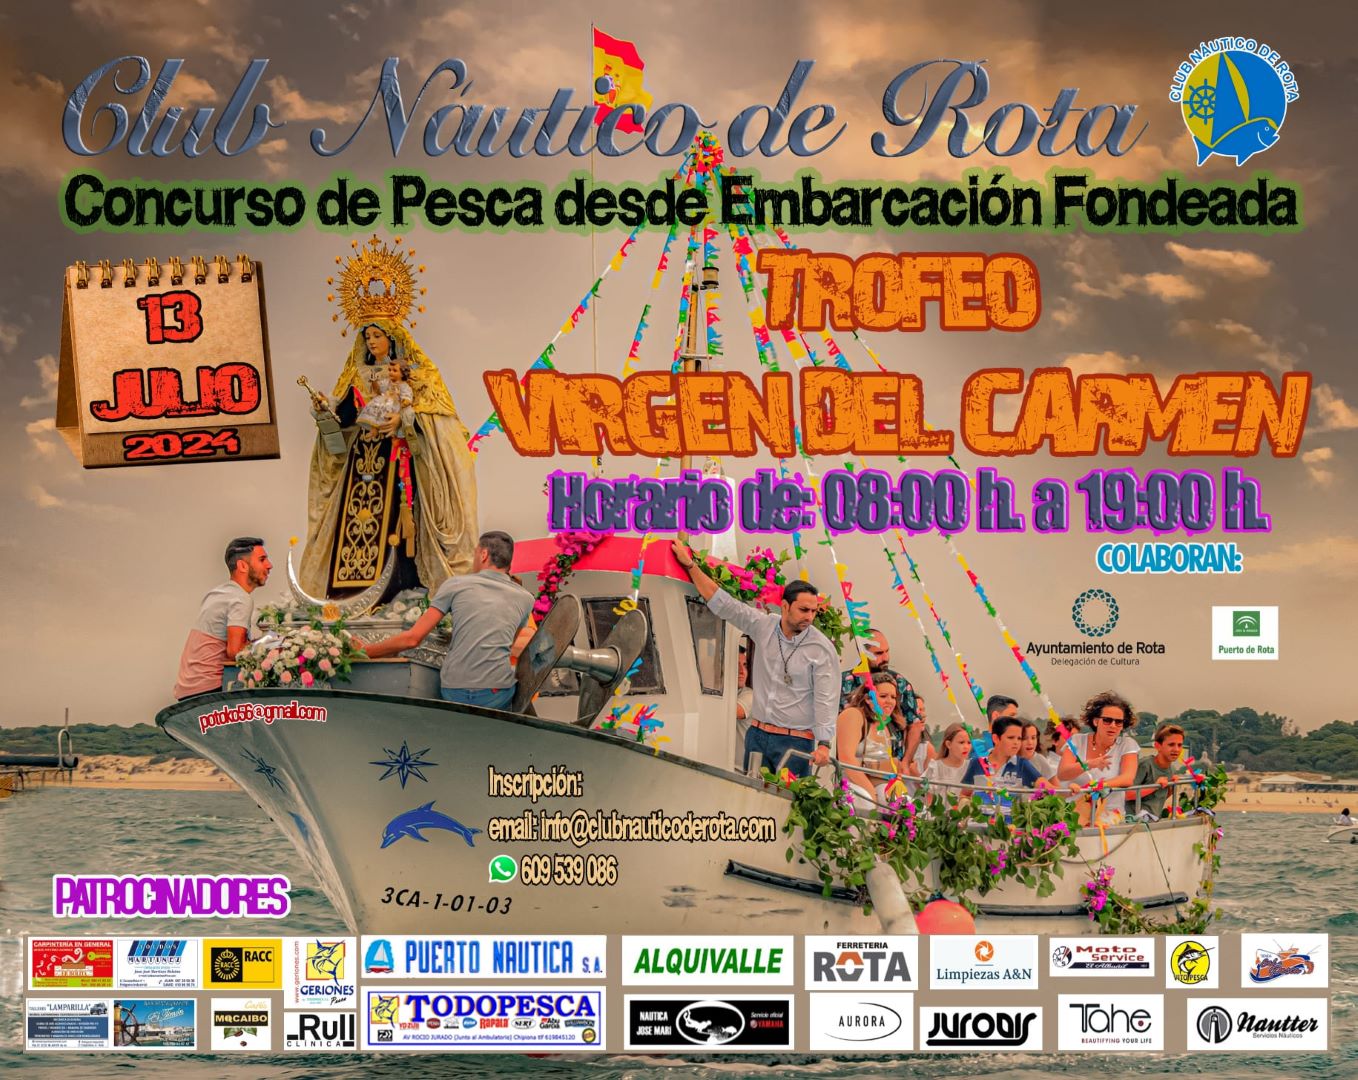 El Club Náutico de Rota organizará el próximo 13 de julio el Concurso de Pesca desde Embarcación Fondeada Virgen del Carmen 2024